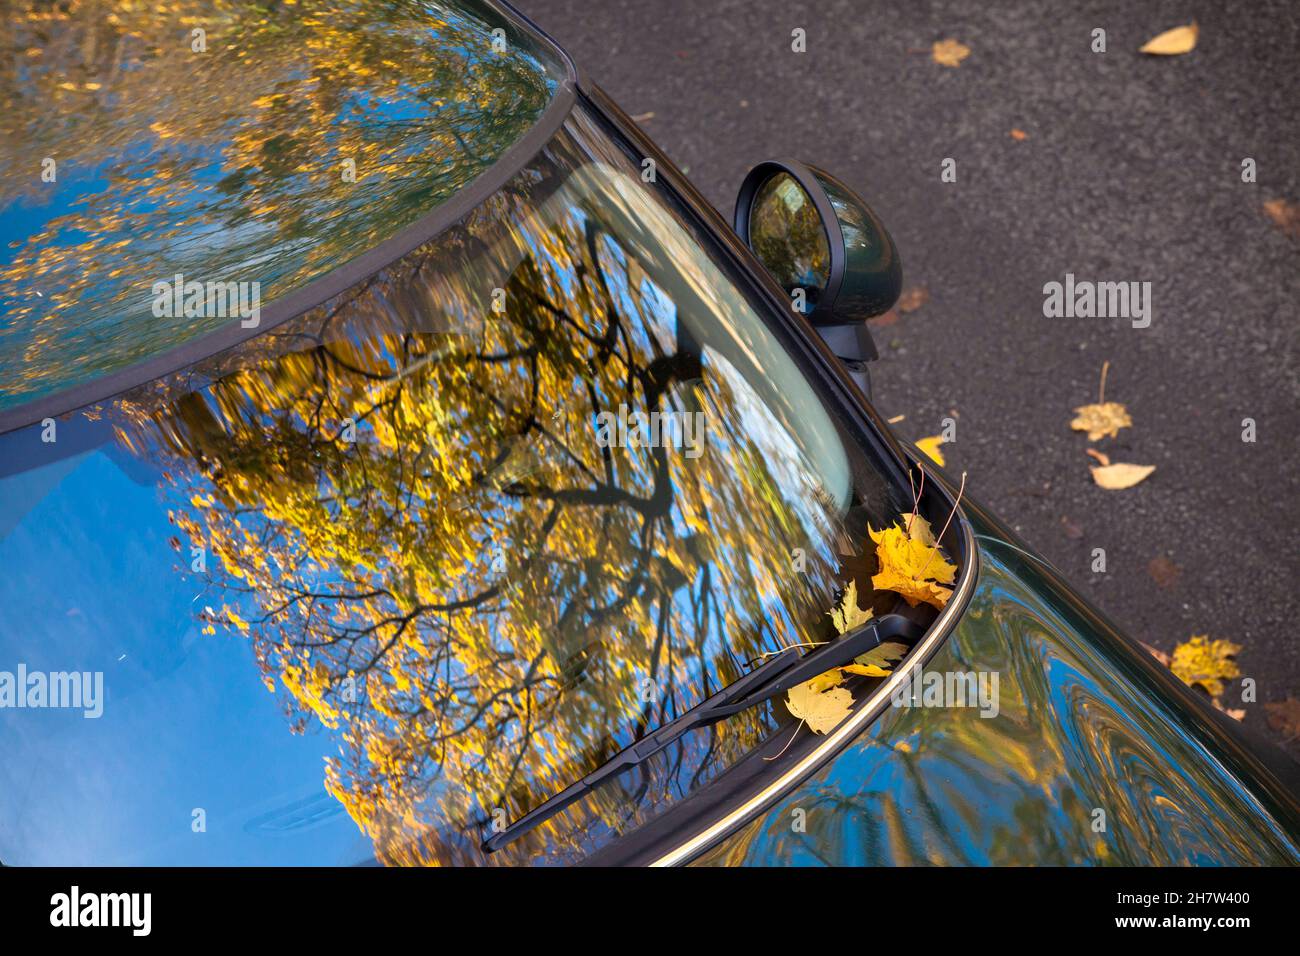 Un albero di acero in autunno si riflette nel parabrezza di un Mini, Wetter an der Ruhr, Renania settentrionale-Vestfalia, Germania. ein Ahornbaum im Herbst spiegelt Foto Stock